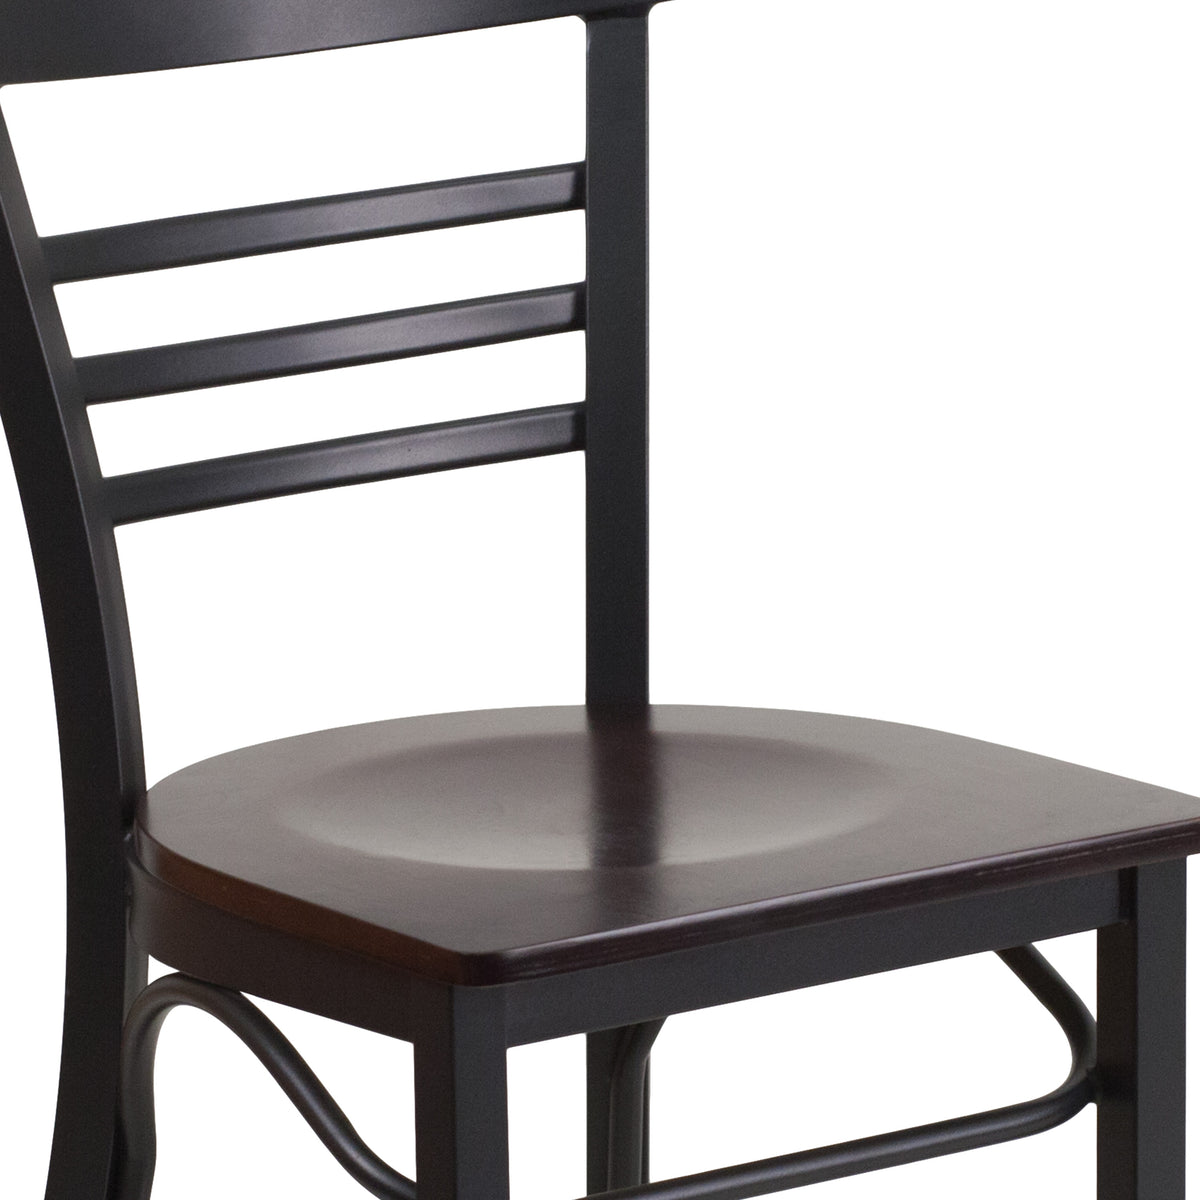 Walnut Wood Seat/Black Metal Frame |#| Black Three-Slat Ladder Back Metal Restaurant Chair - Walnut Wood Seat